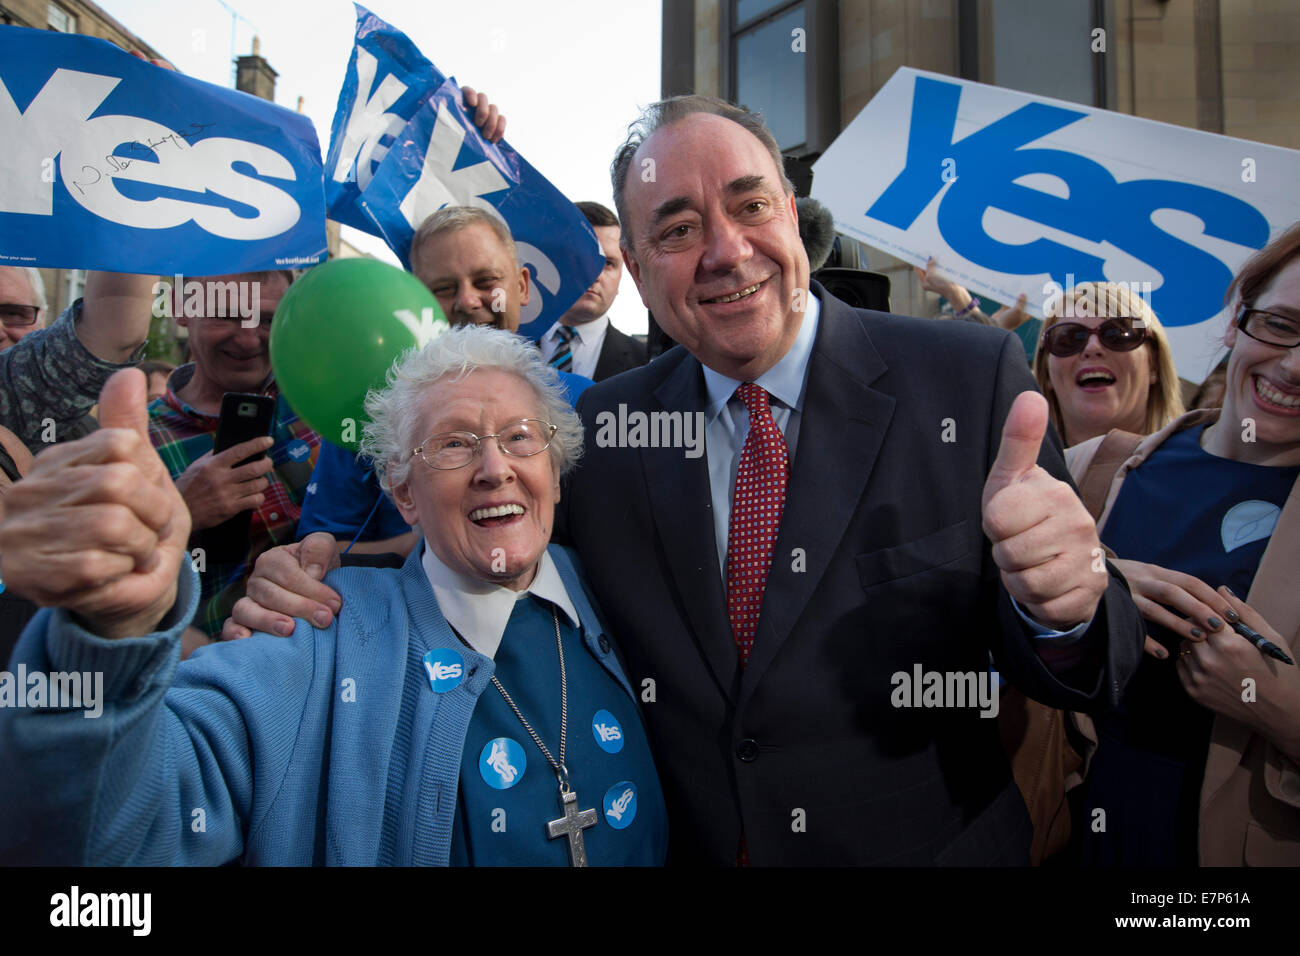 El Primer Ministro escocés Alex Salmond MSP es retratada con un partidario llamado Hermana Elizabeth en un evento en Perth. Foto de stock